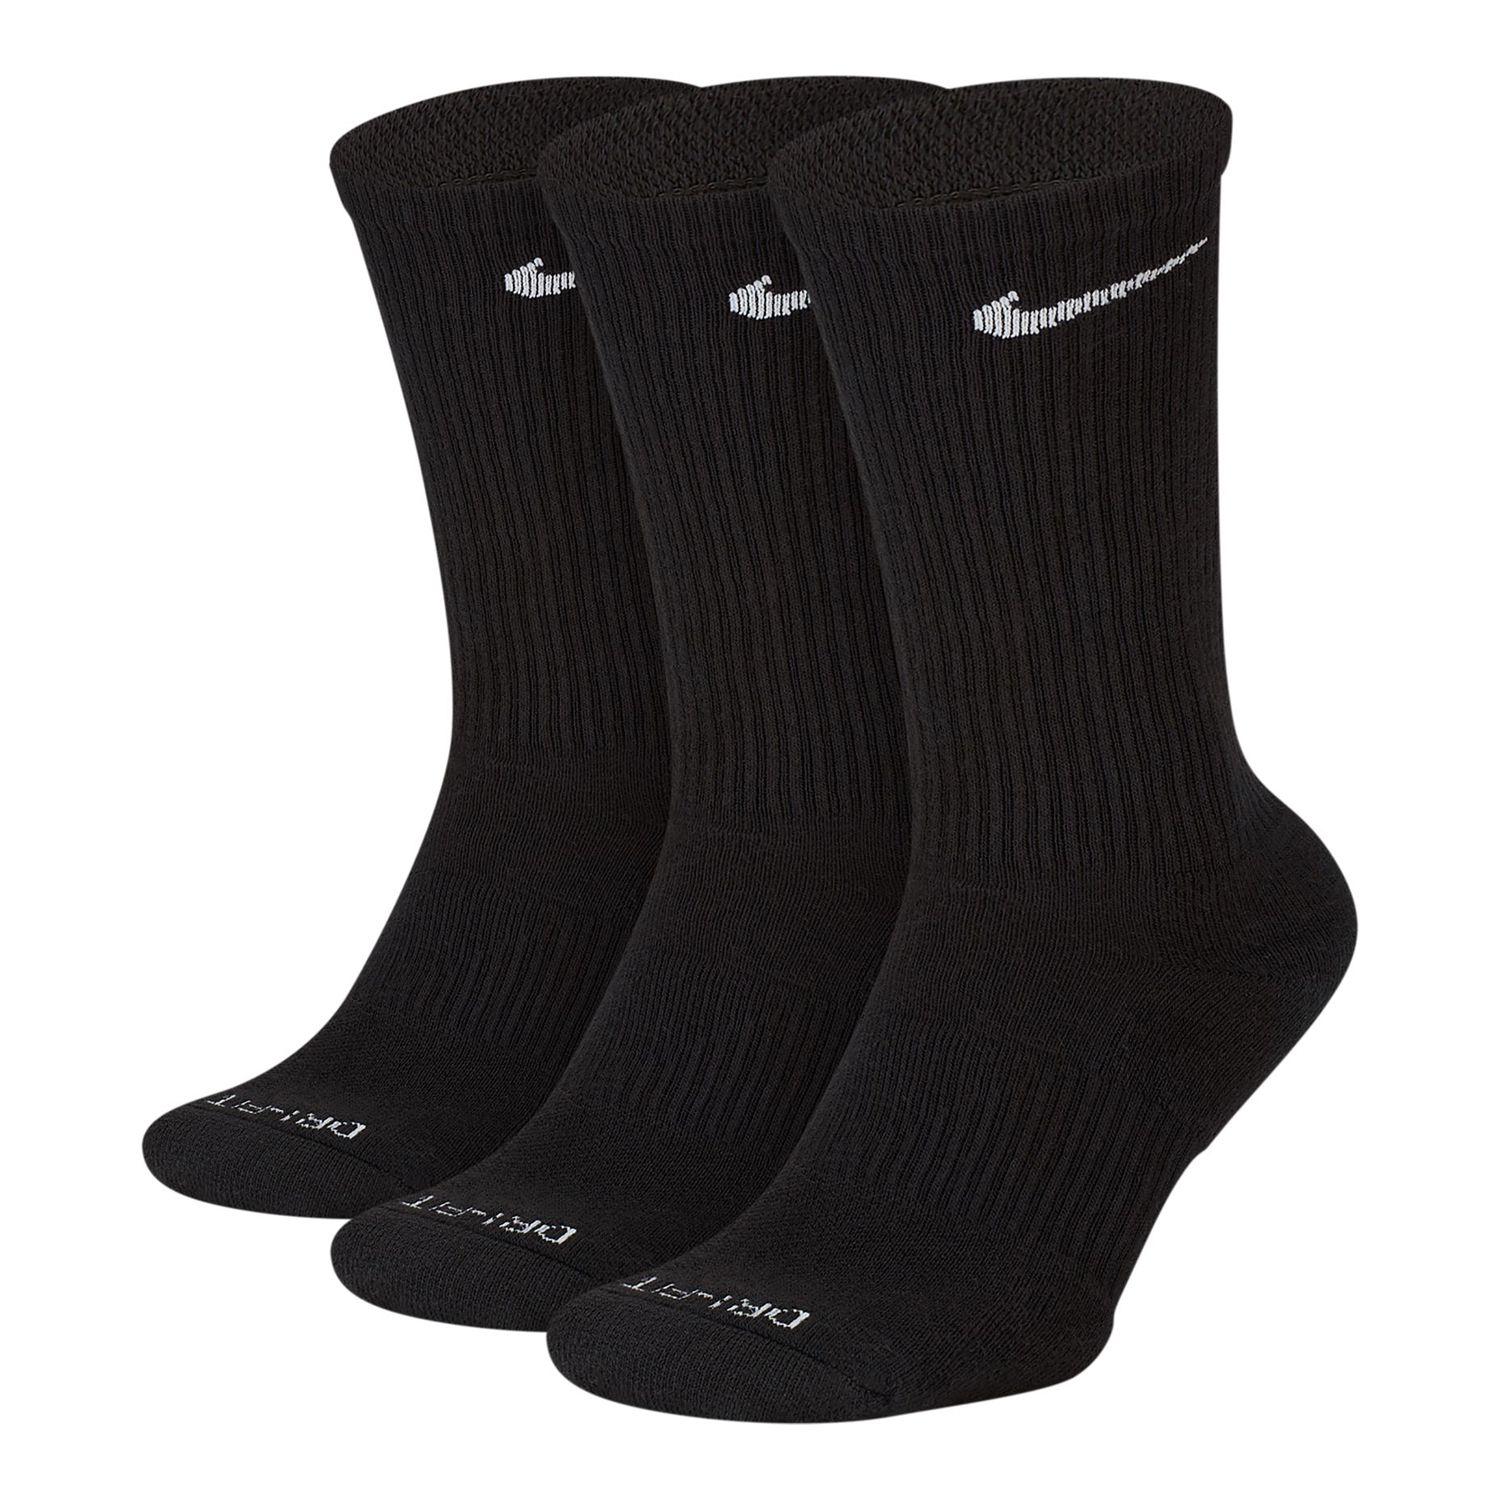 black tall nike socks